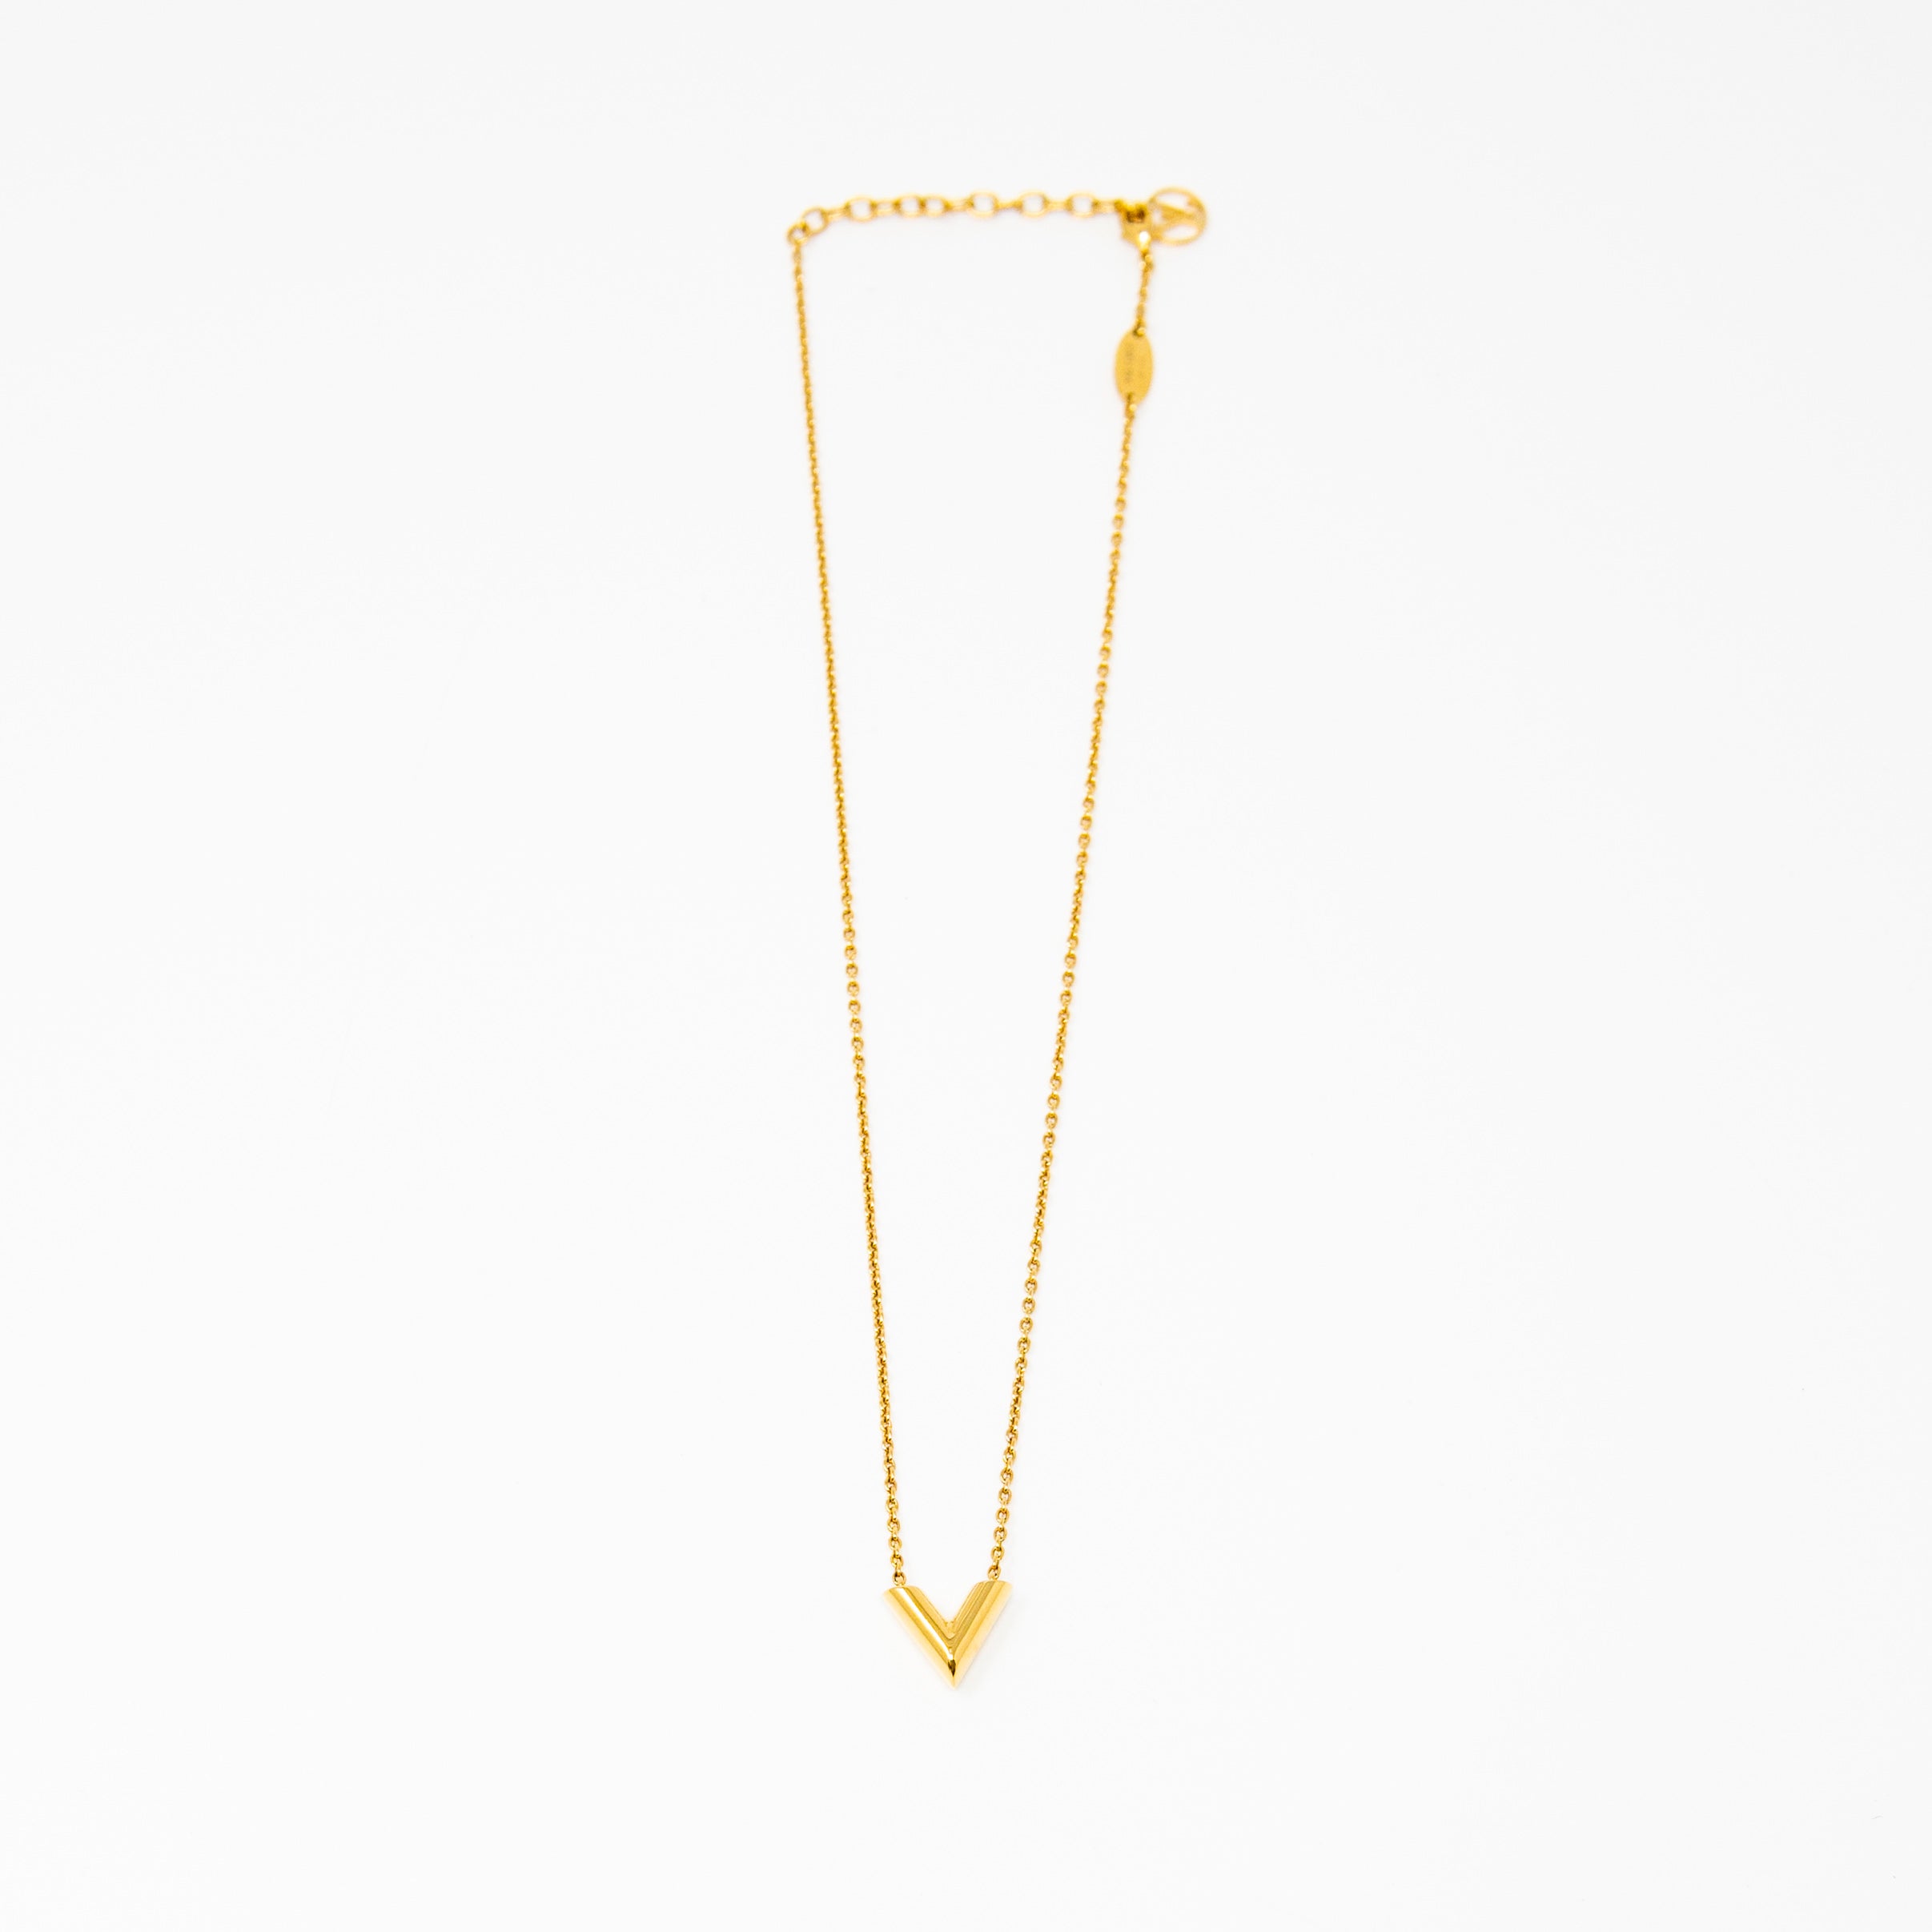 Louis Vuitton Silver-tone Essential V Necklace Pendant M63197 Women R1088 |  eBay